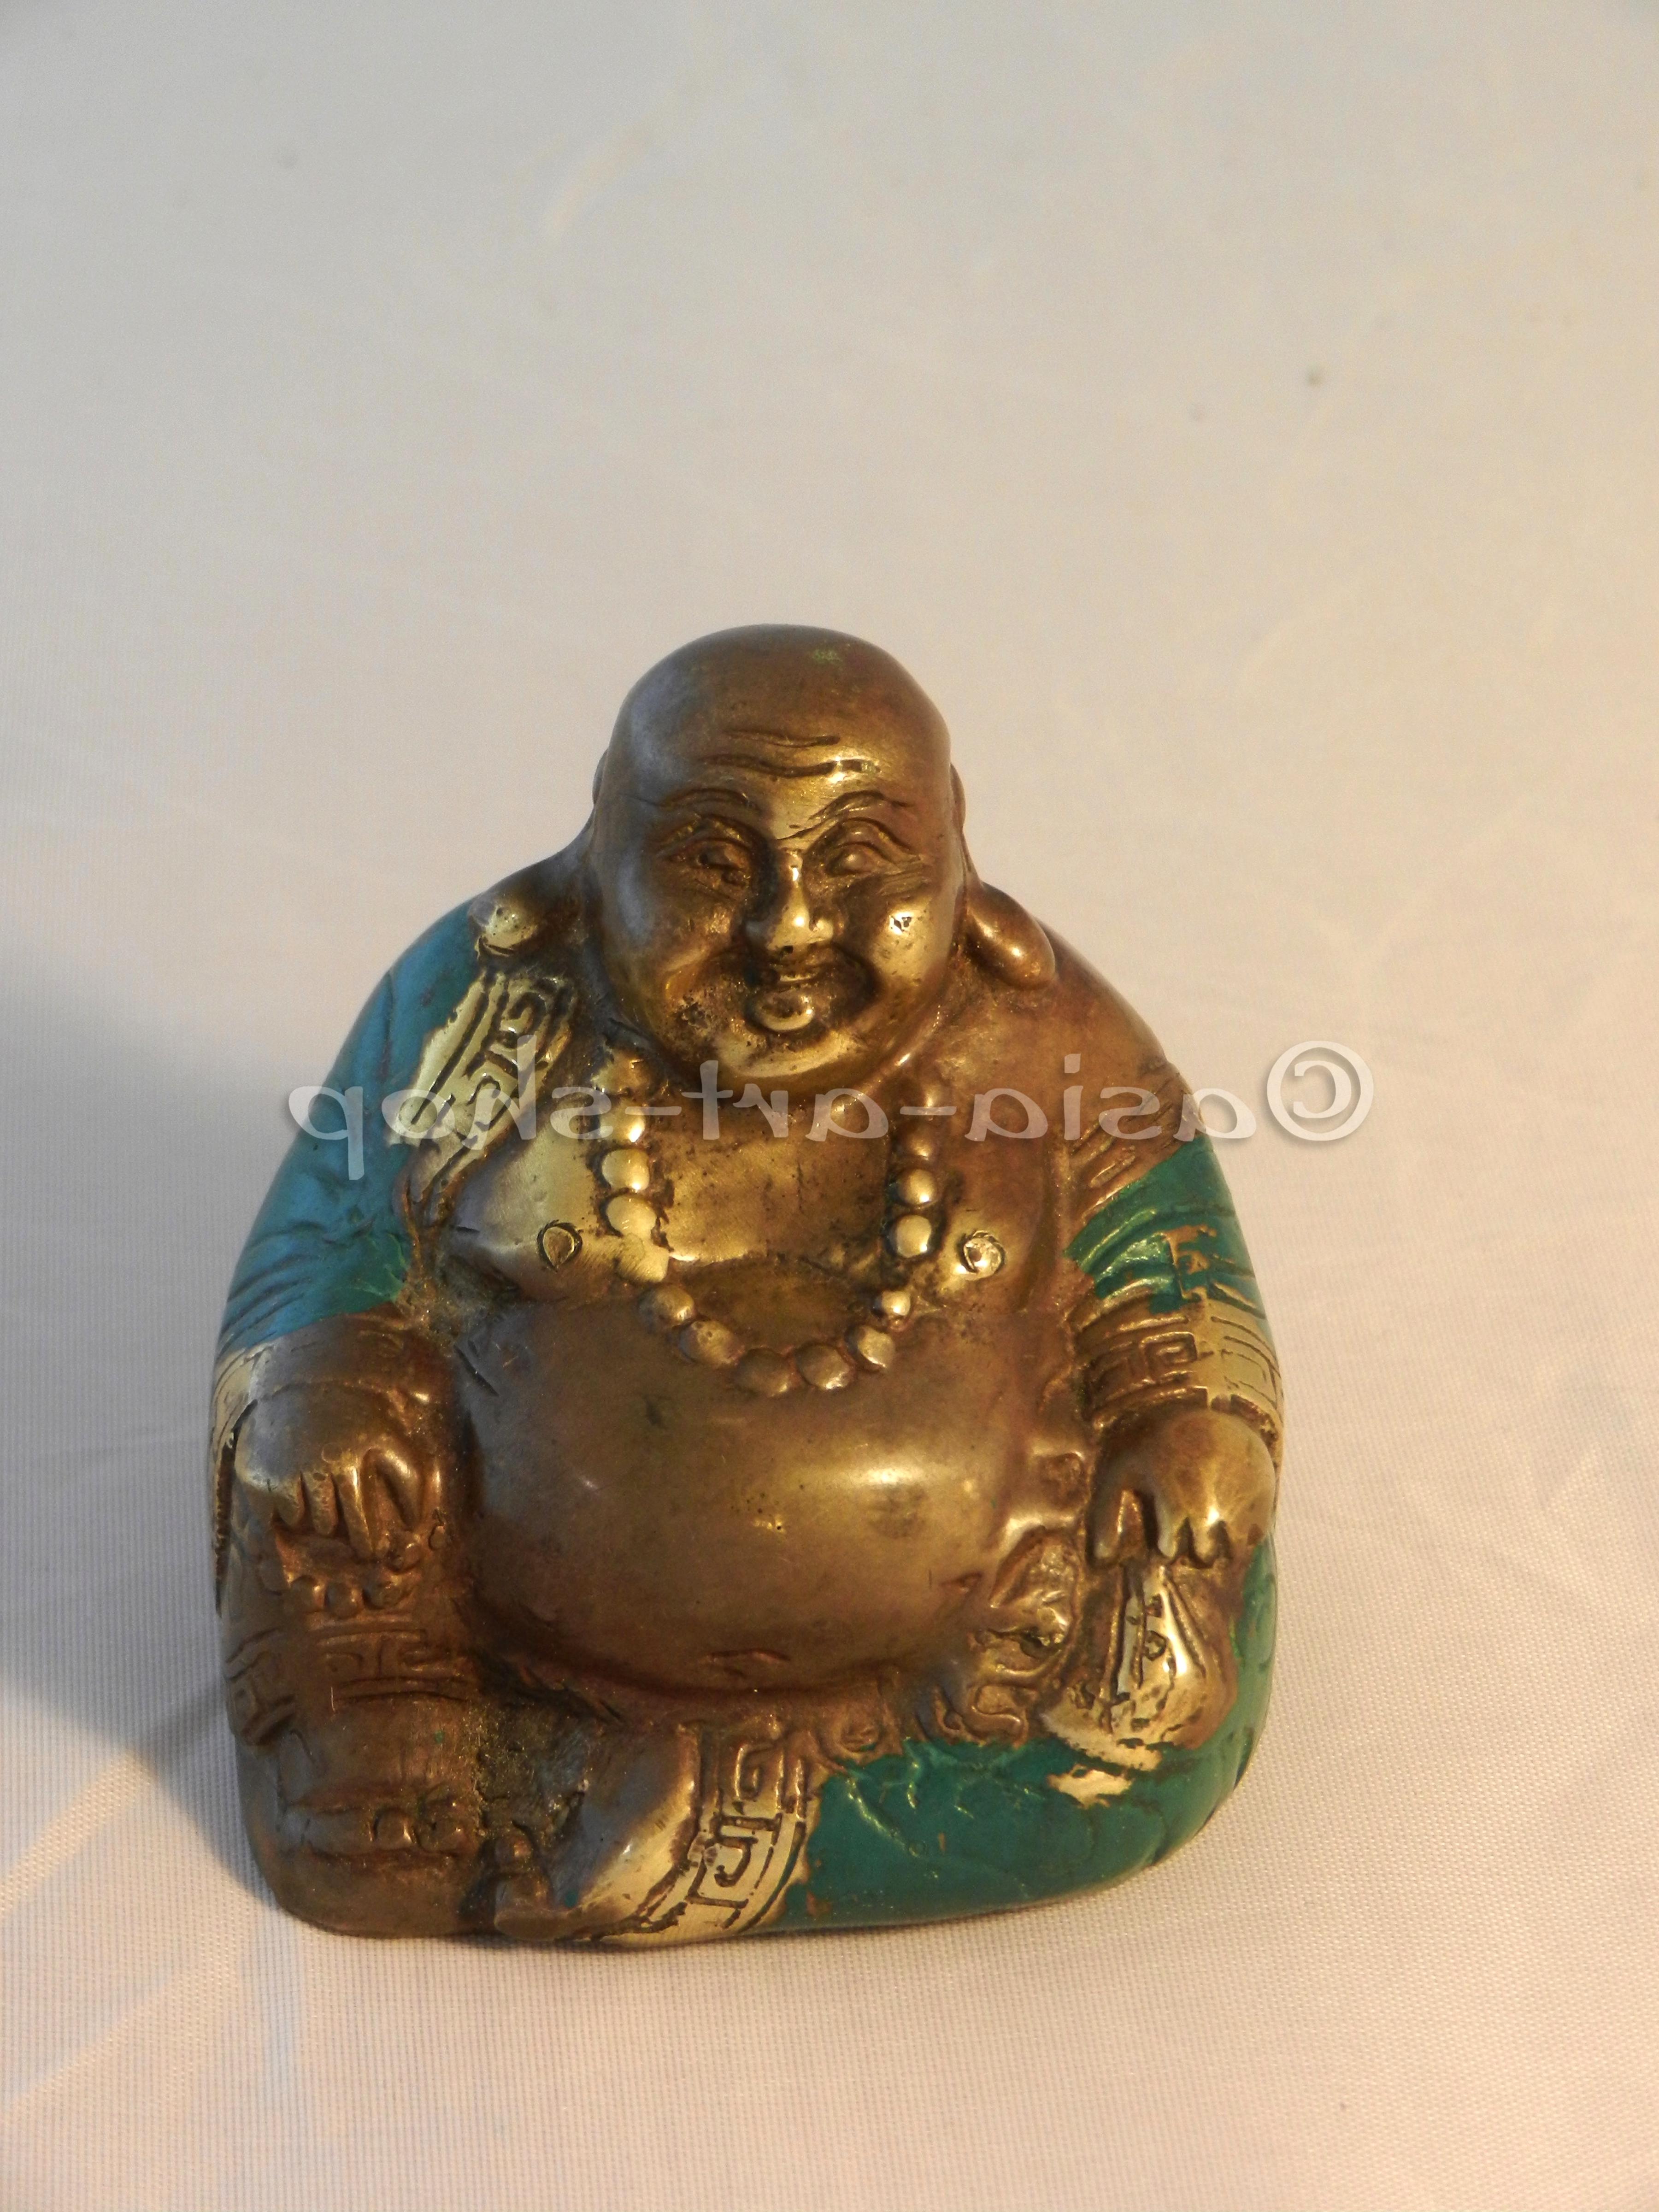 10 x Kleiner schöner Buddha Budda Figur Feng Shui Lotussitz Steingrau Neu 12 cm